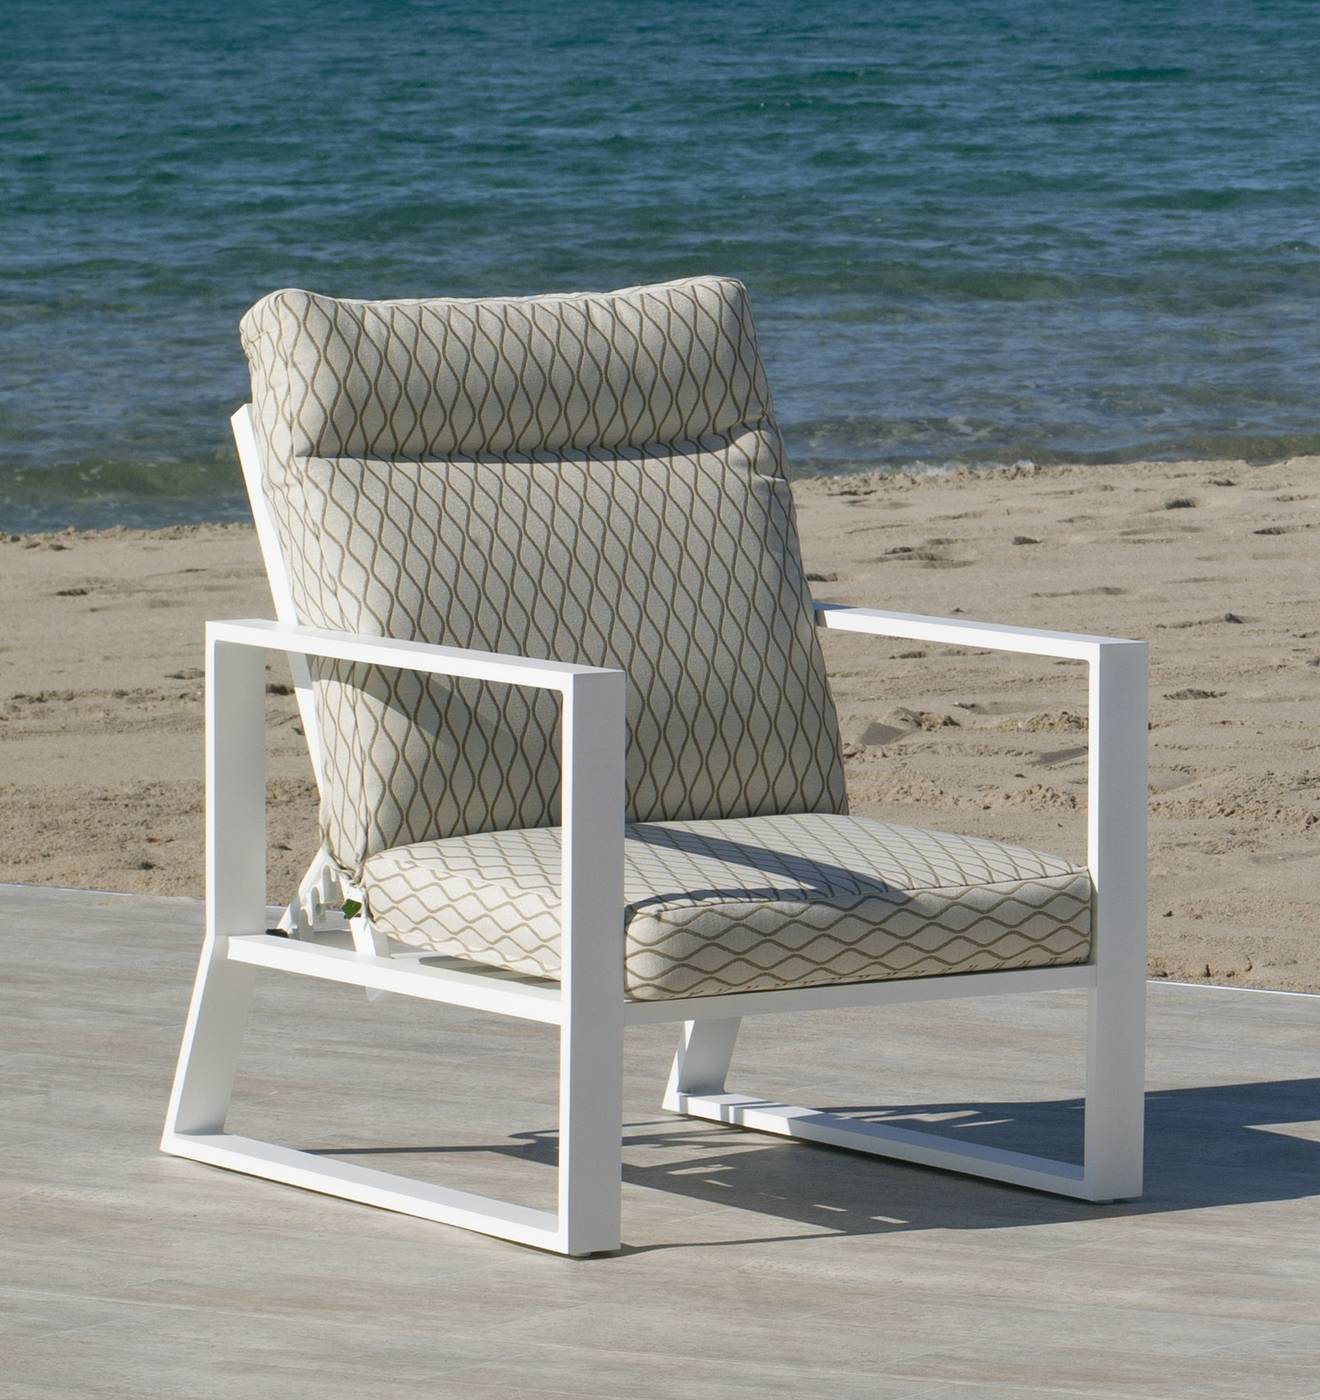 Sillón relax lujo, con respaldo reclinable. Fabricado de aluminio en color blanco, antracita o bronce.